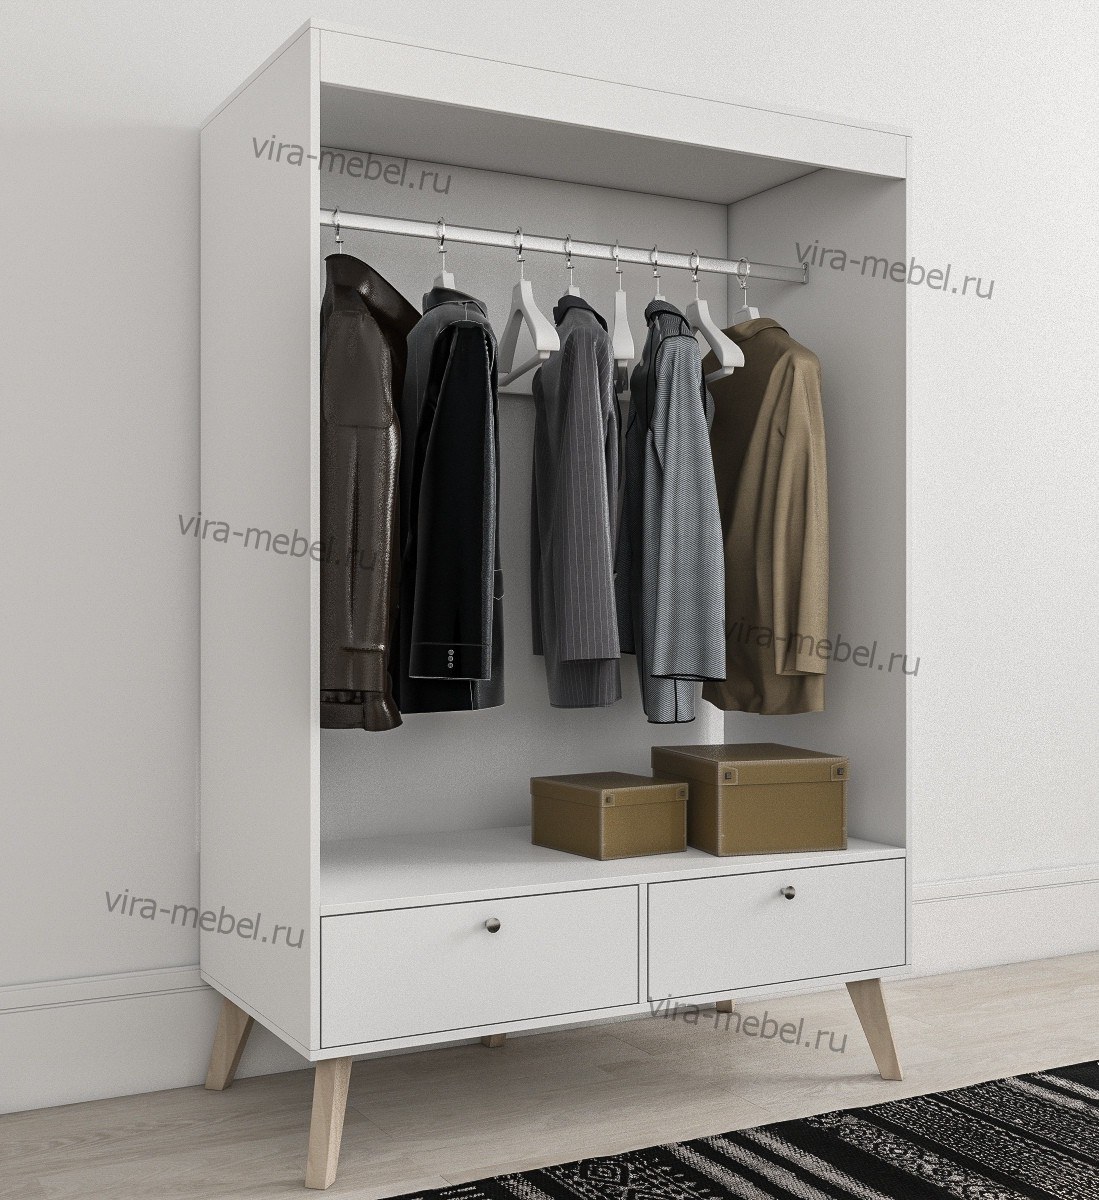 шкаф высотой 120 см для одежды